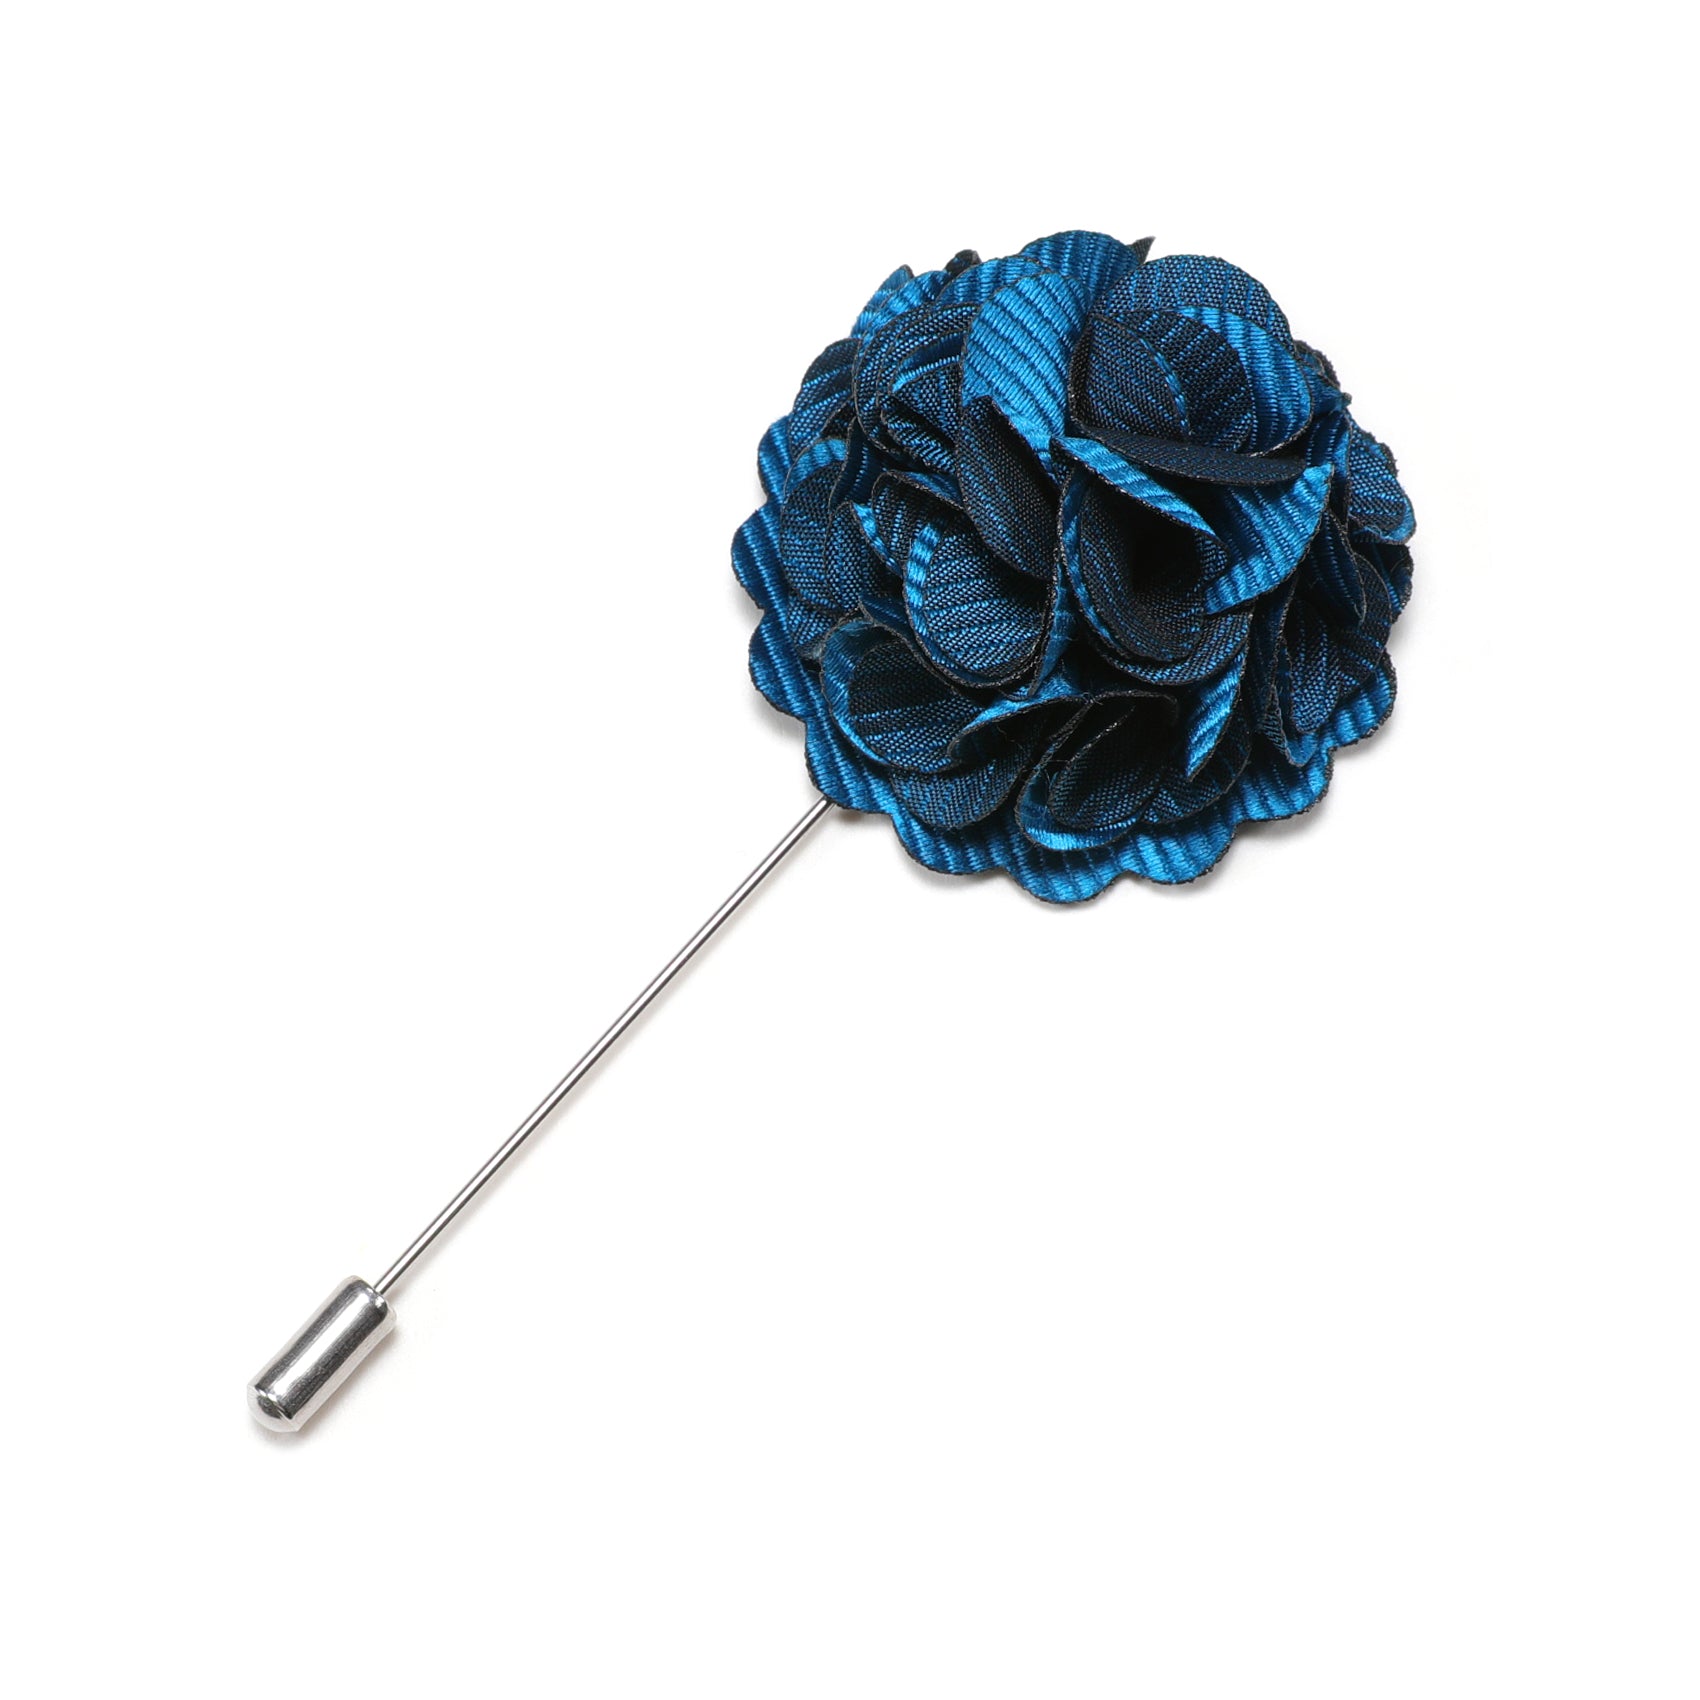 Barry.wang Men's Tie Accessories Sky Blue Flower Lapel Pin Luxury Fashion